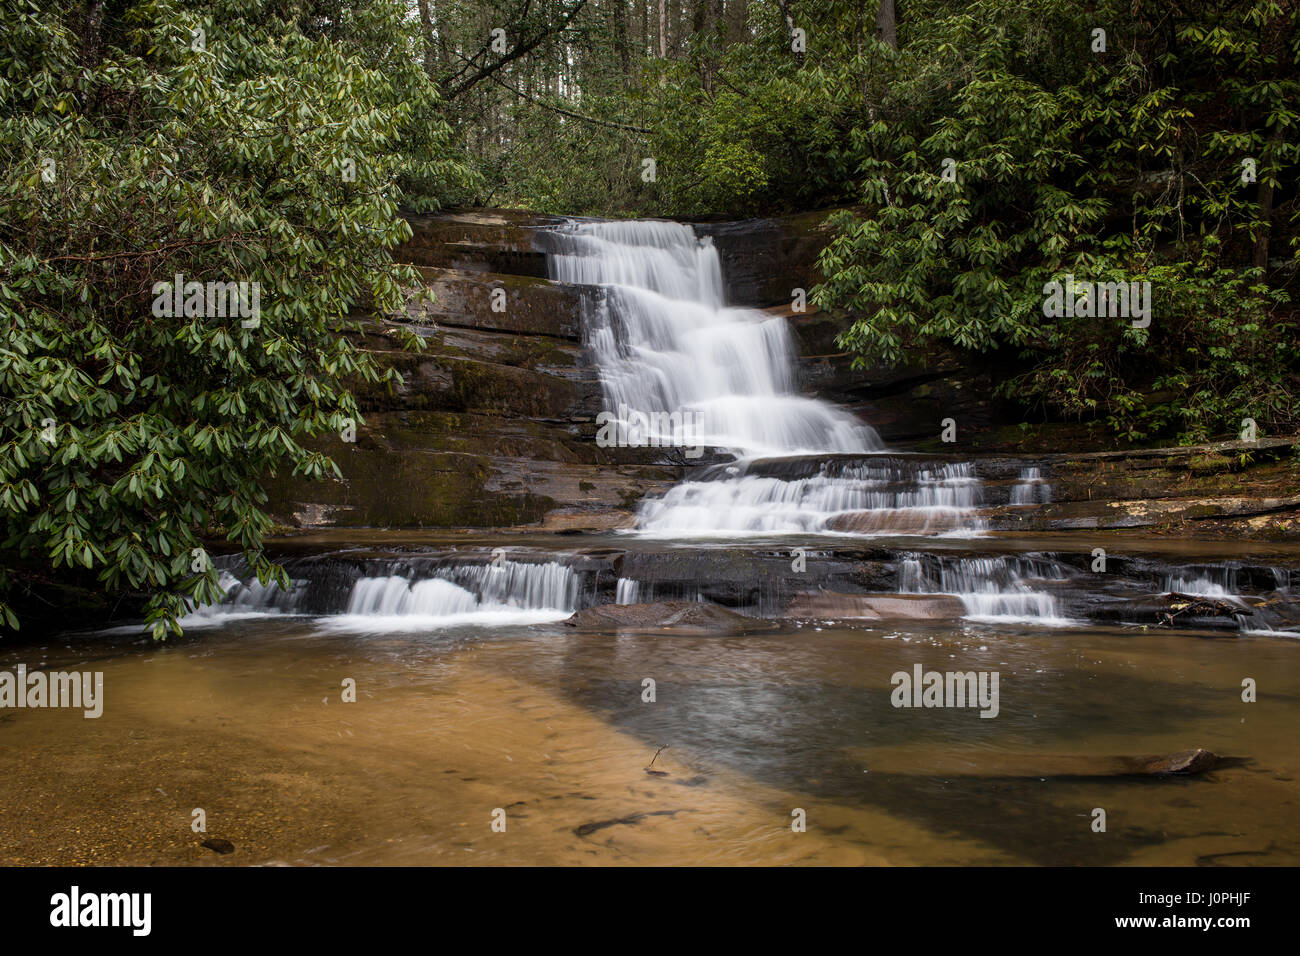 Stonewall Creek Falls befinden sich in Tiger, GA südlich von Clayton, GA.  Die Wasserfälle sind ca. 20 Fuß hoch.  Wasserstände sind besser im nördlichen GA in den letzten paar Wochen auf der Suche. Stockfoto